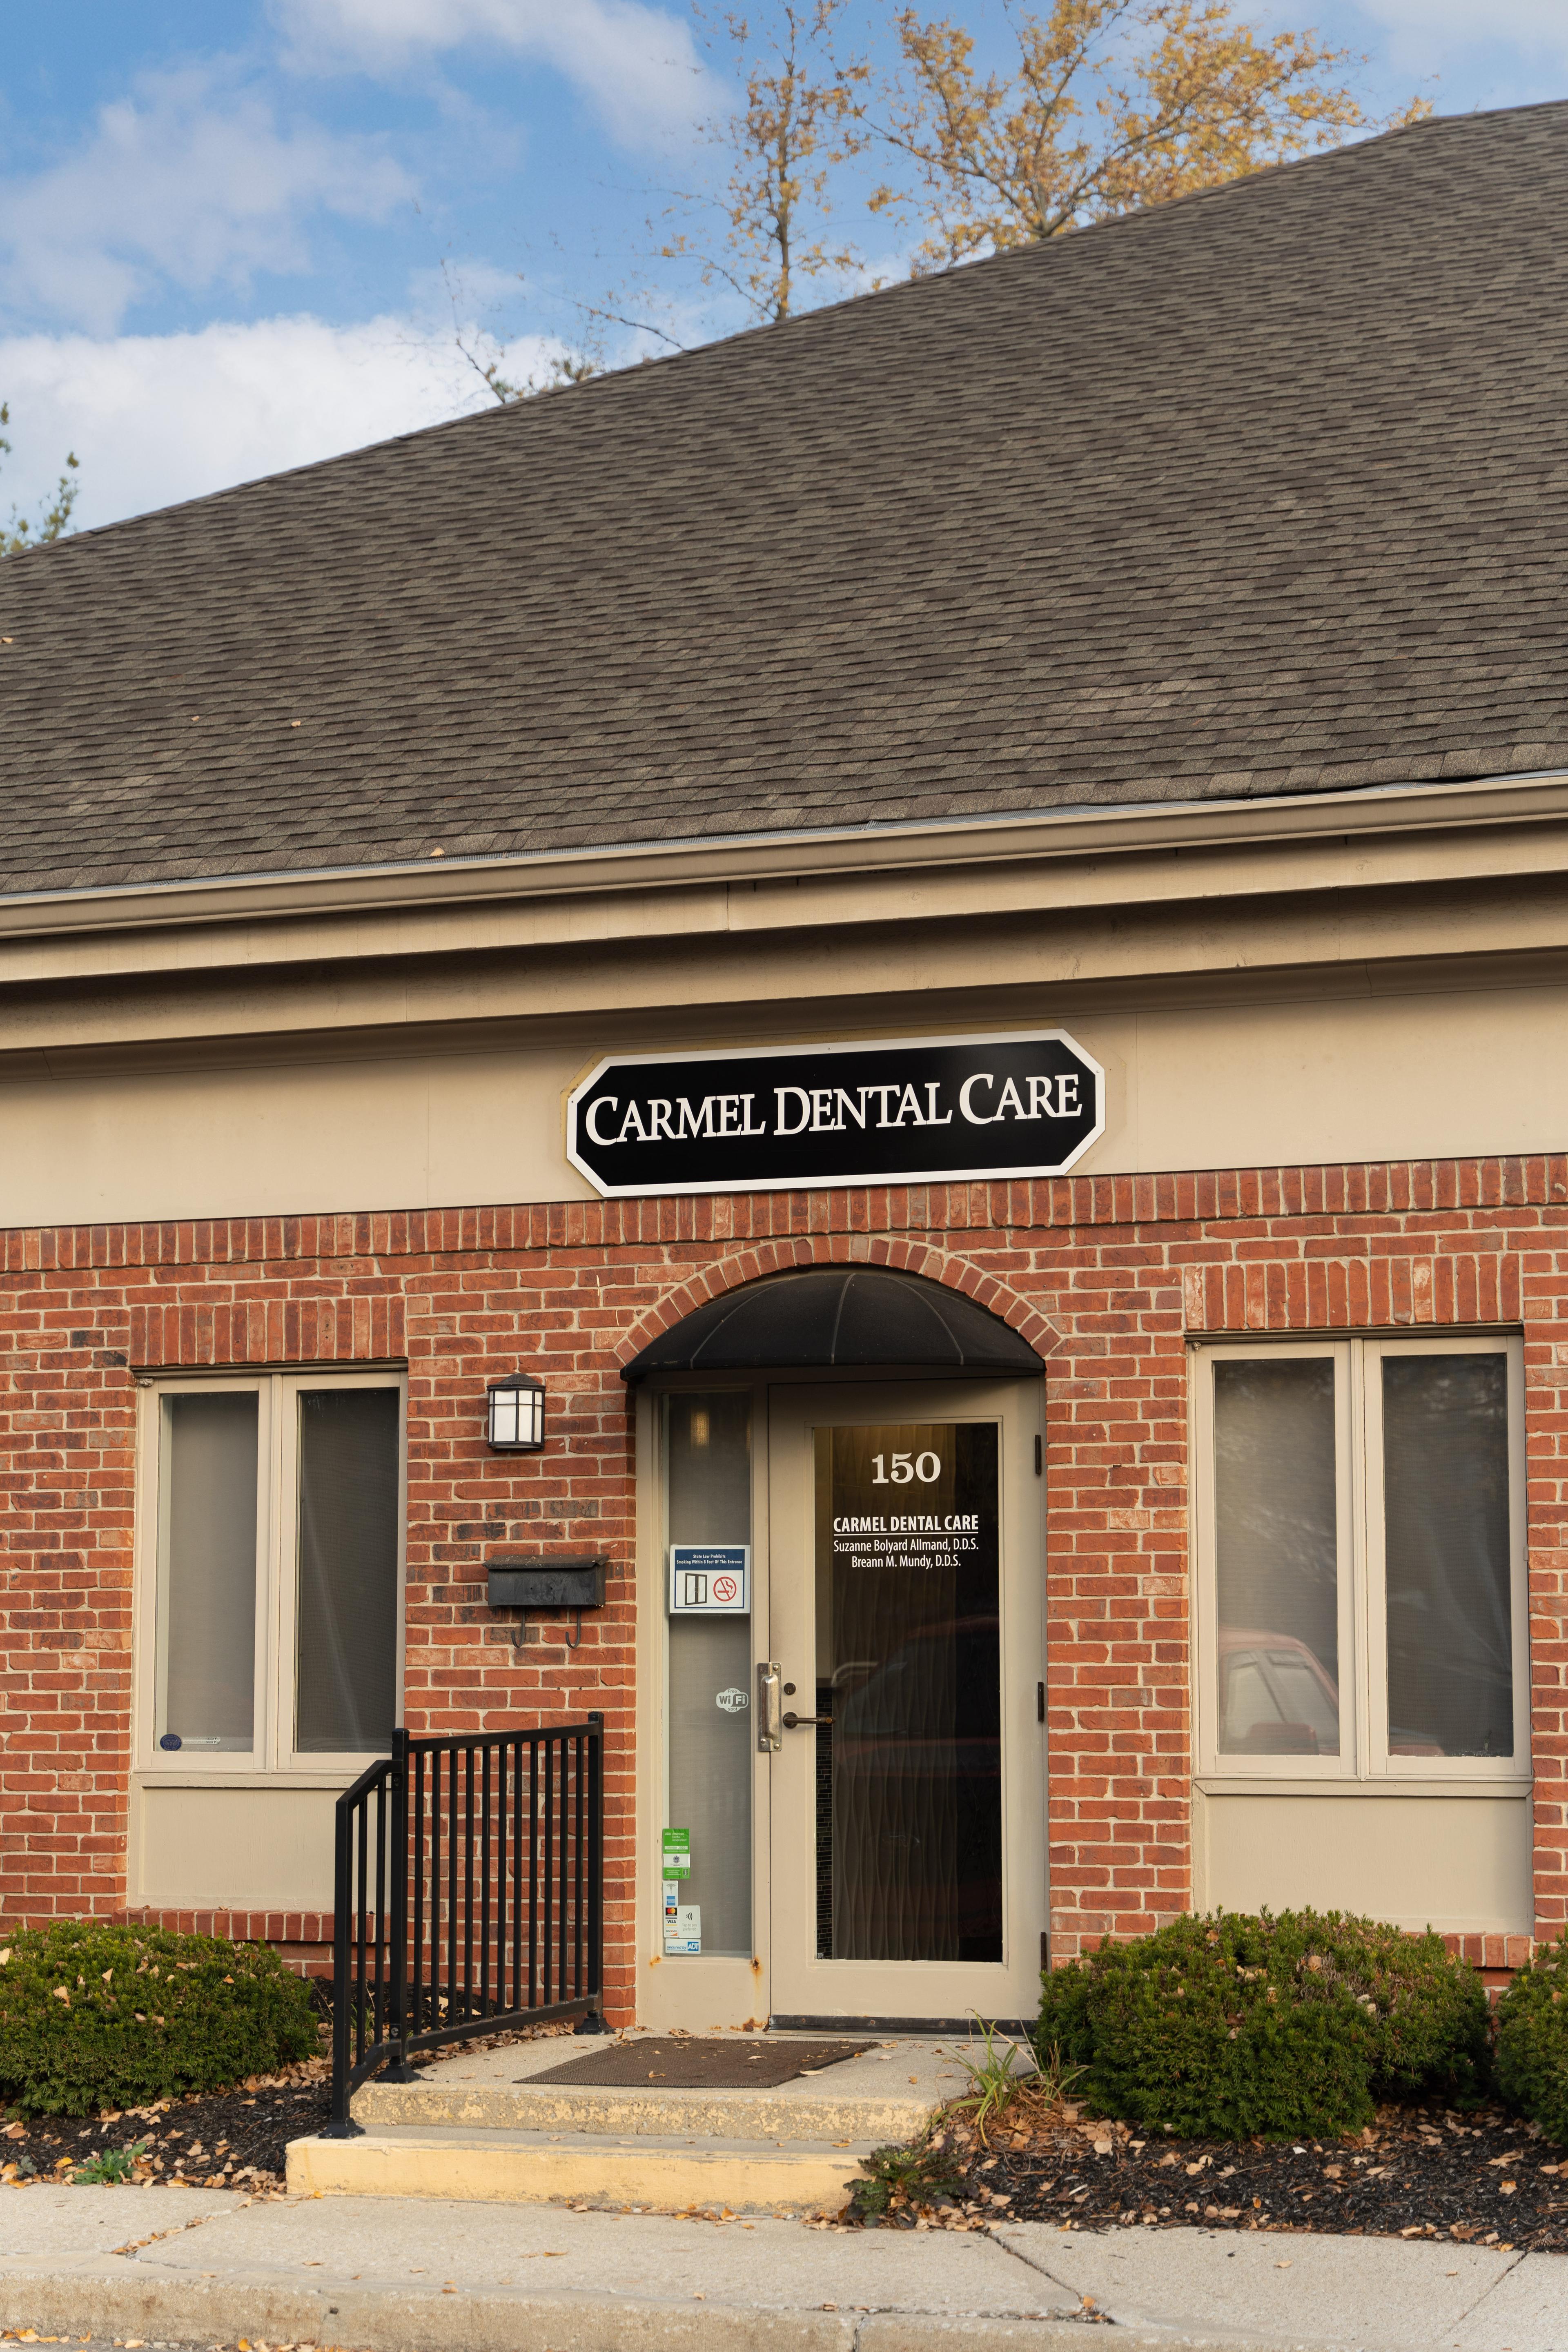 image of carmel dental care exterior